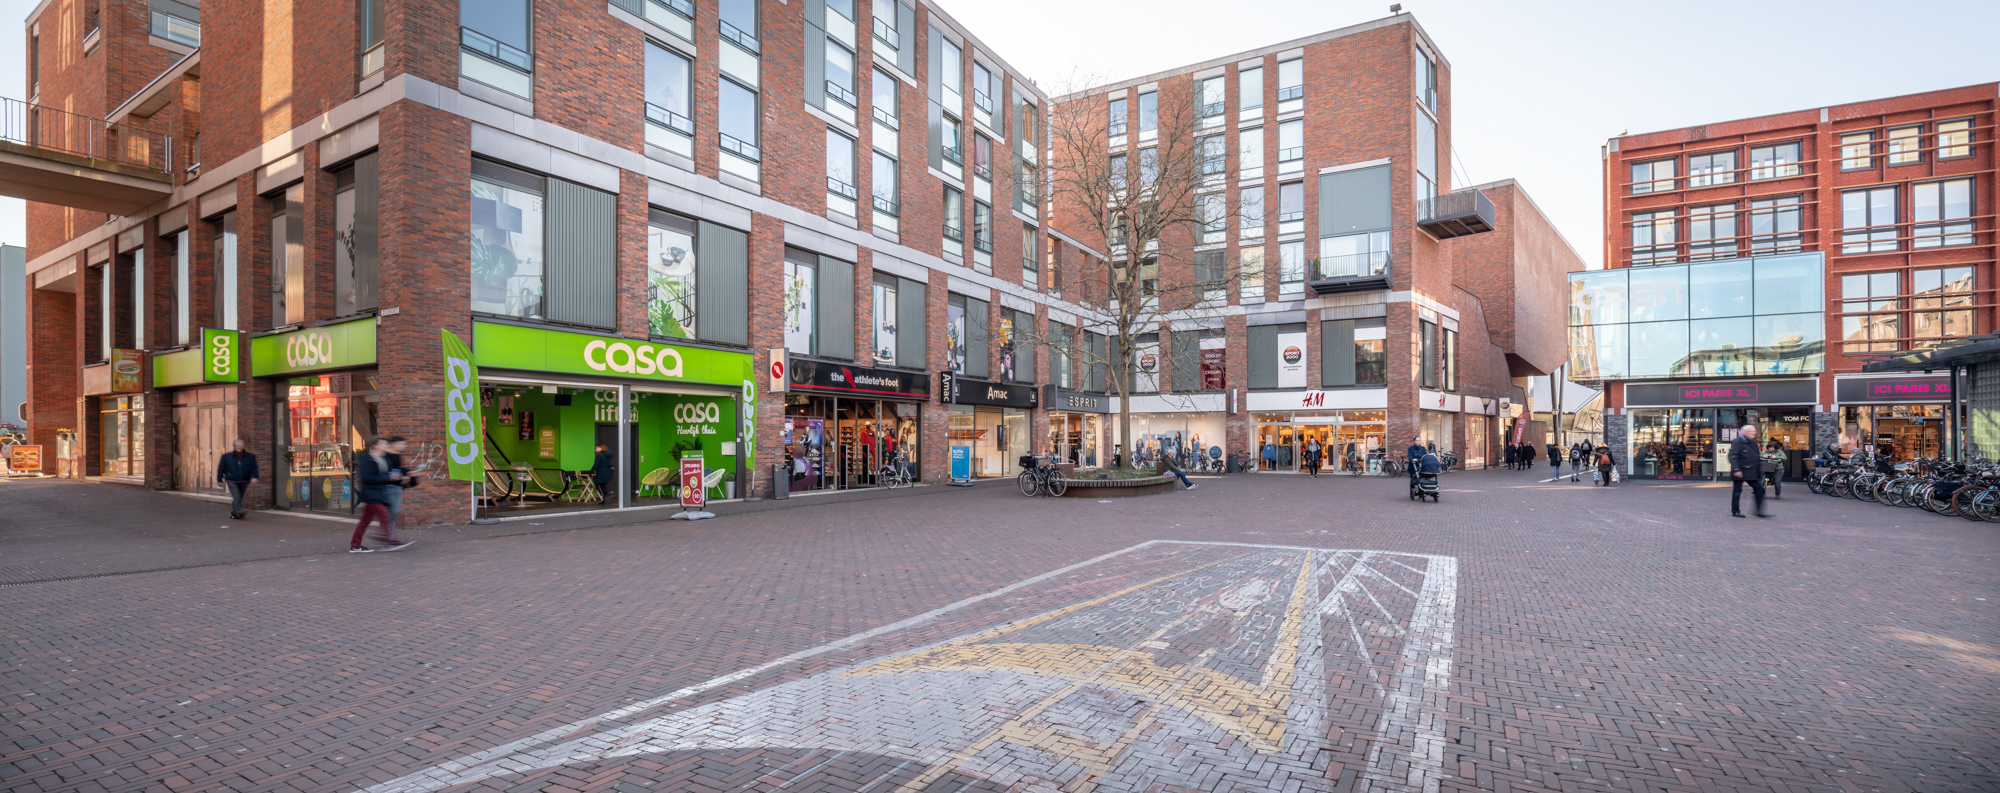 Corum Investments koopt winkelcentrum Zuidpoort in stadshart Delft